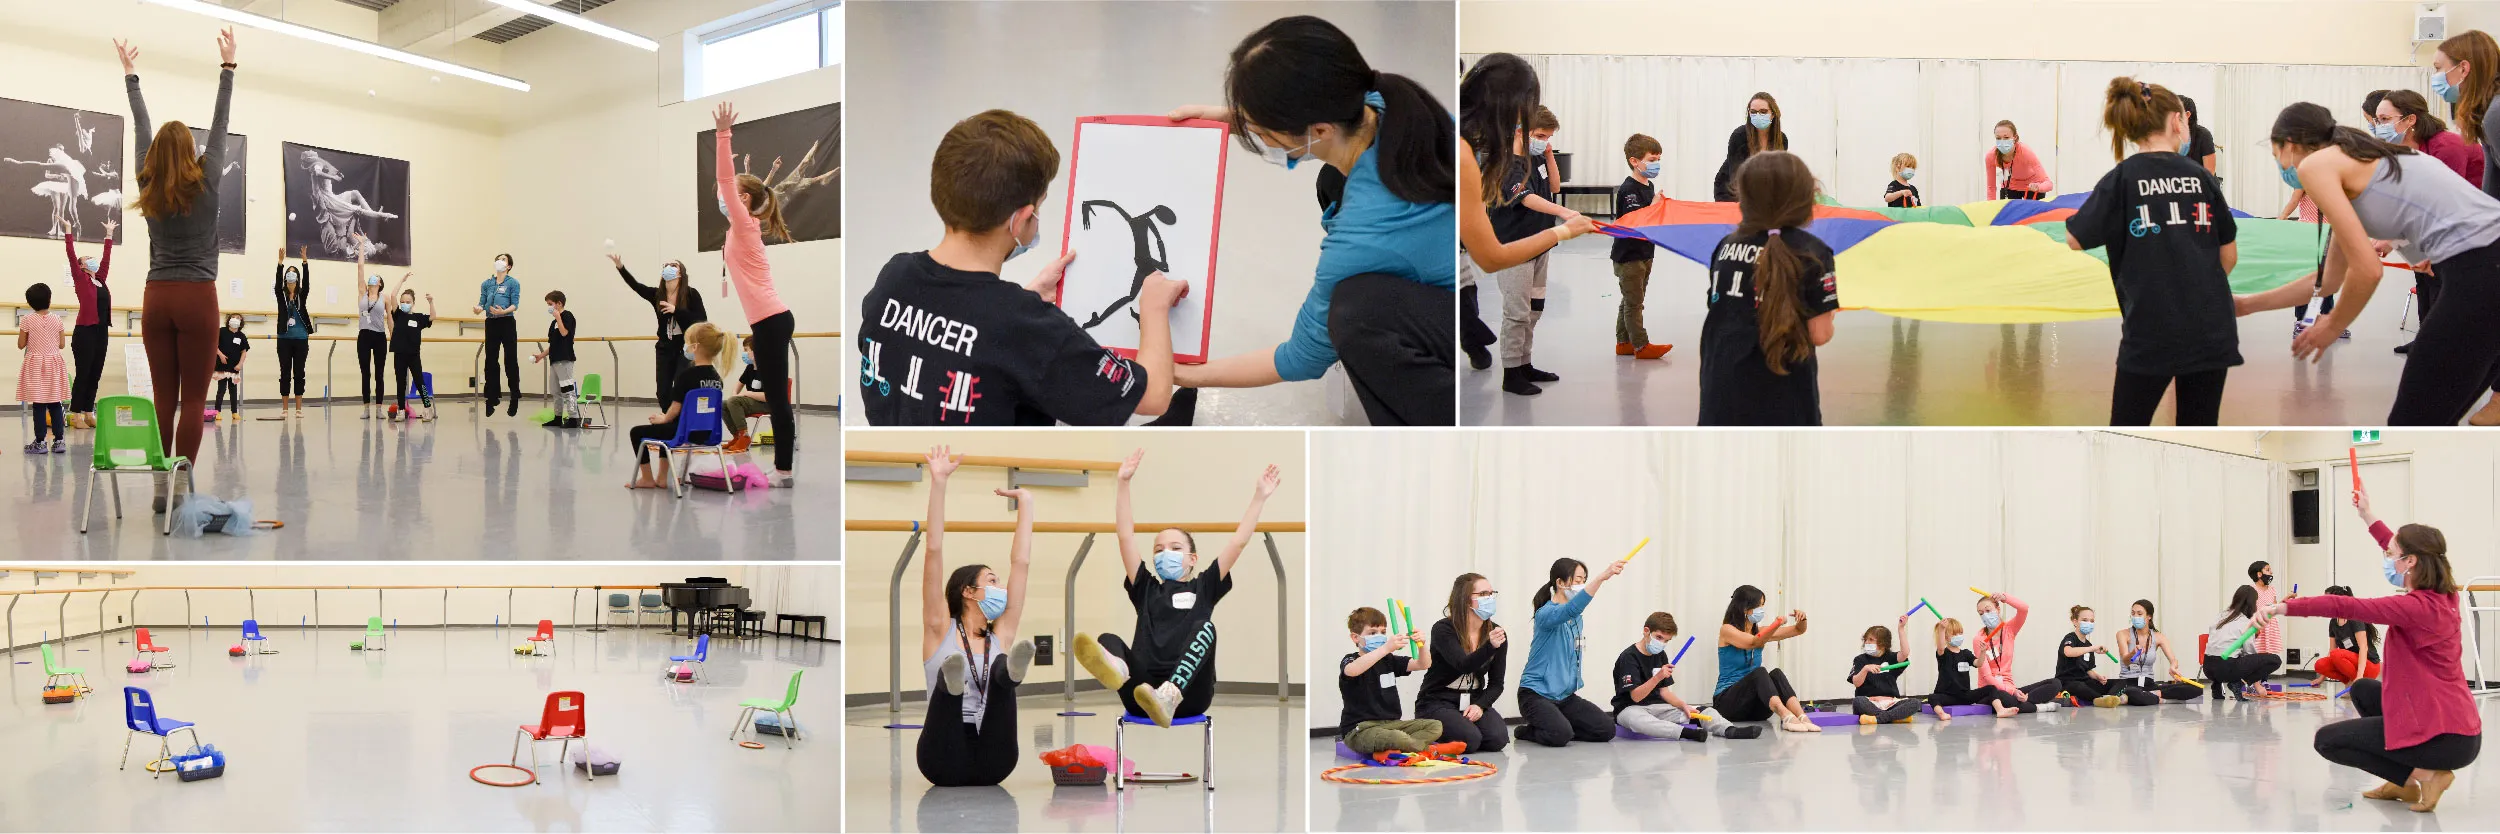 Dancers participate in NBS’ Adaptive Dance Program